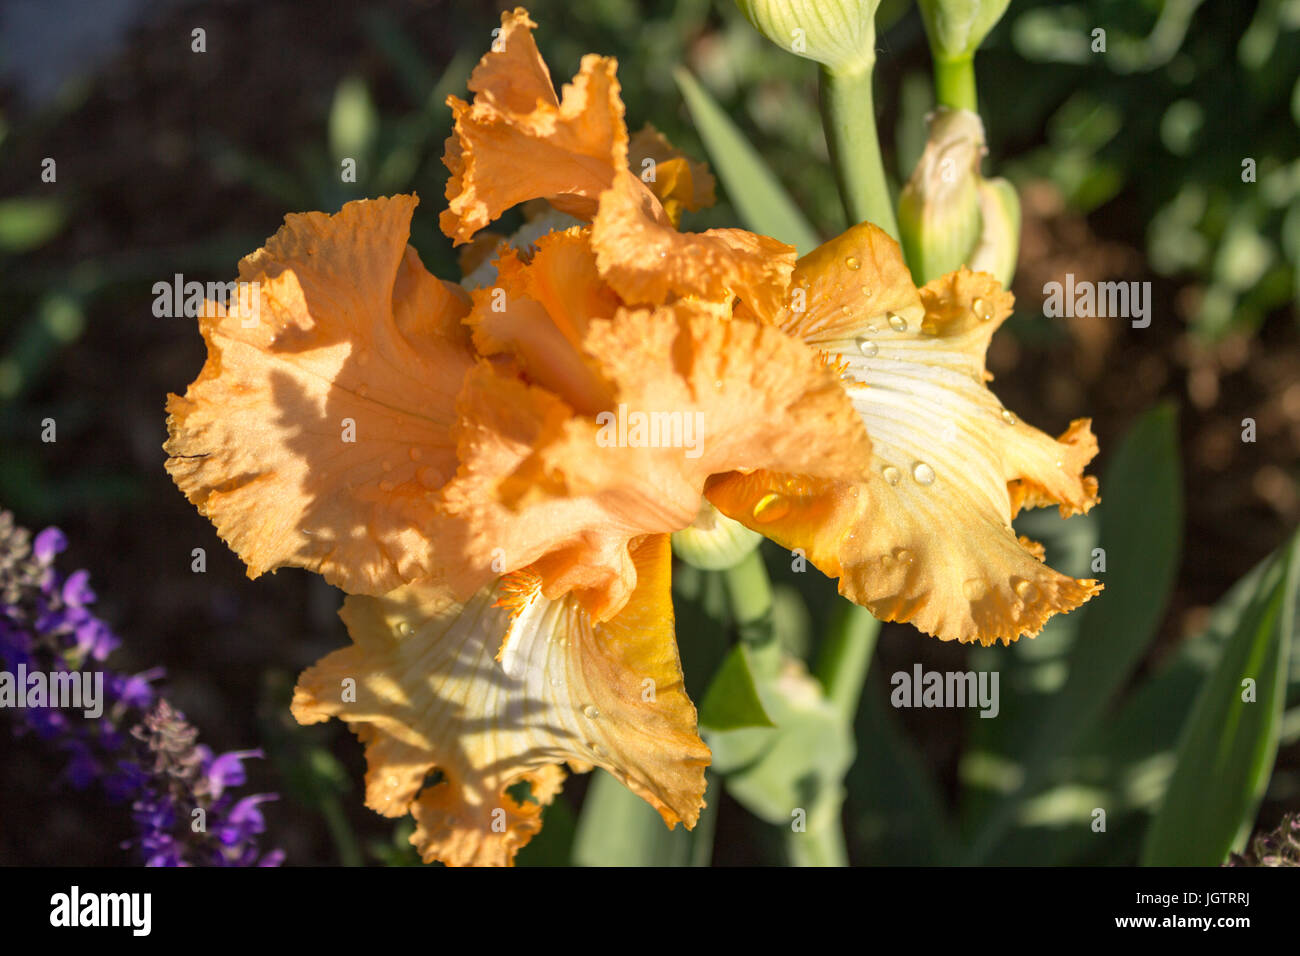 Iris con melocotón anaranjado profundo de garganta, de cerca. Foto de stock